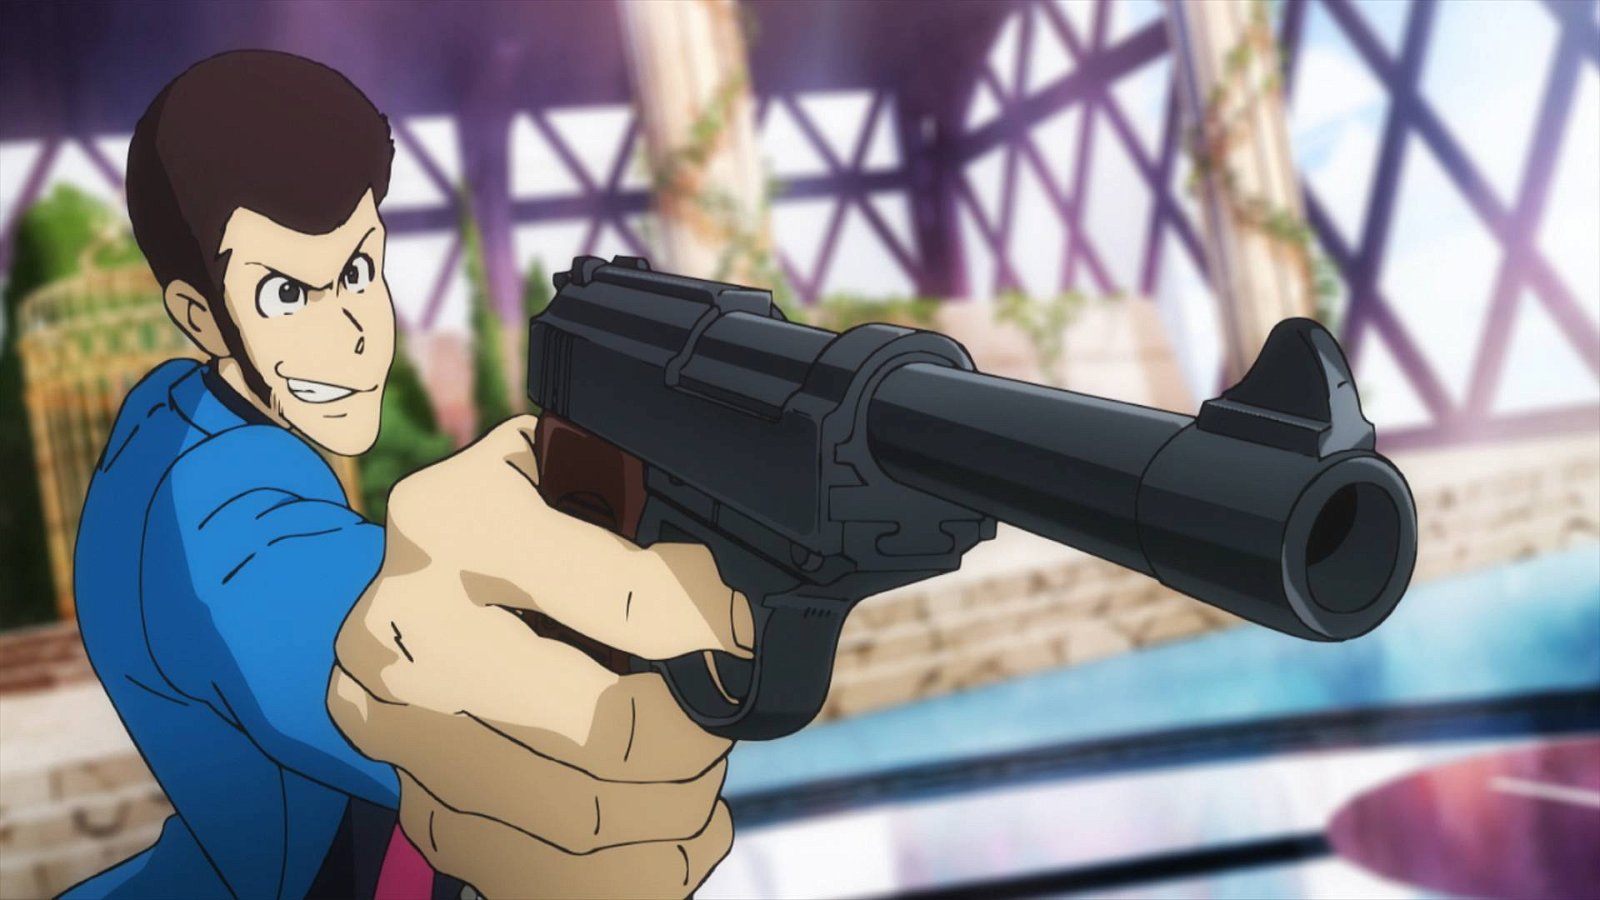 Immagine di Rapinatore seriale con pistola giocattolo arrestato in Giappone: "volevo omaggiare Lupin III"